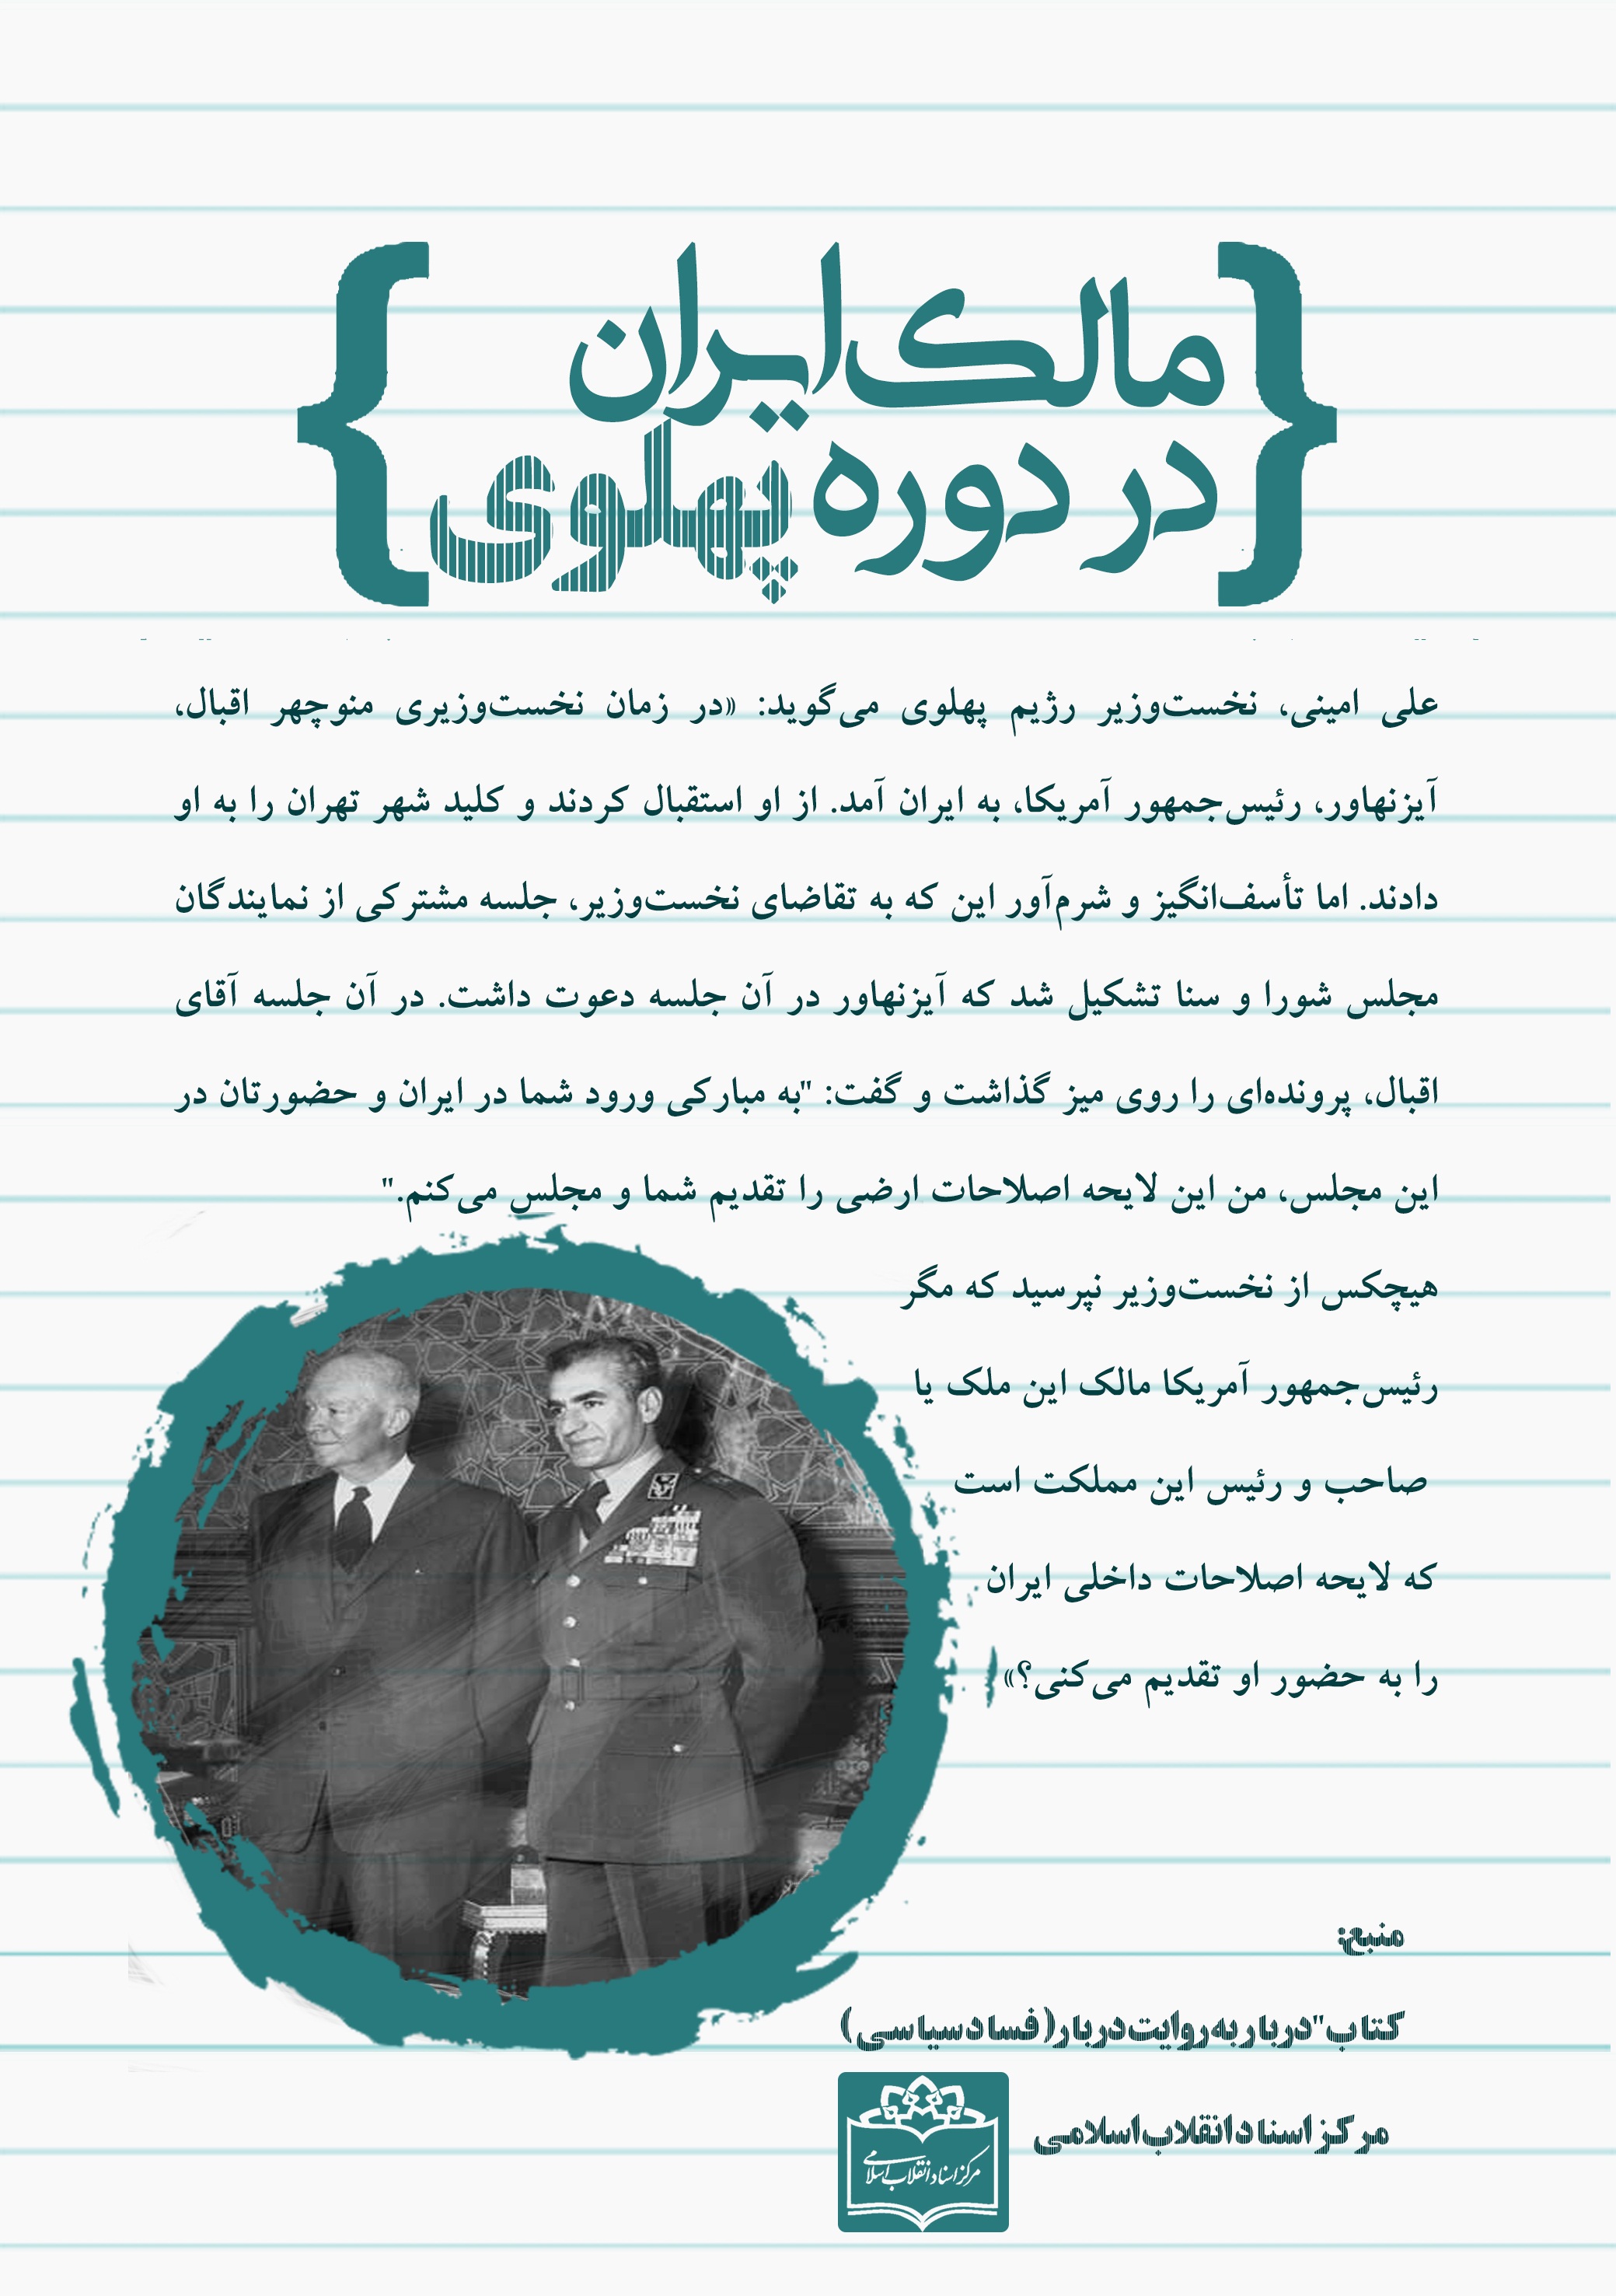 مالک اصلی ایران در دوره پهلوی